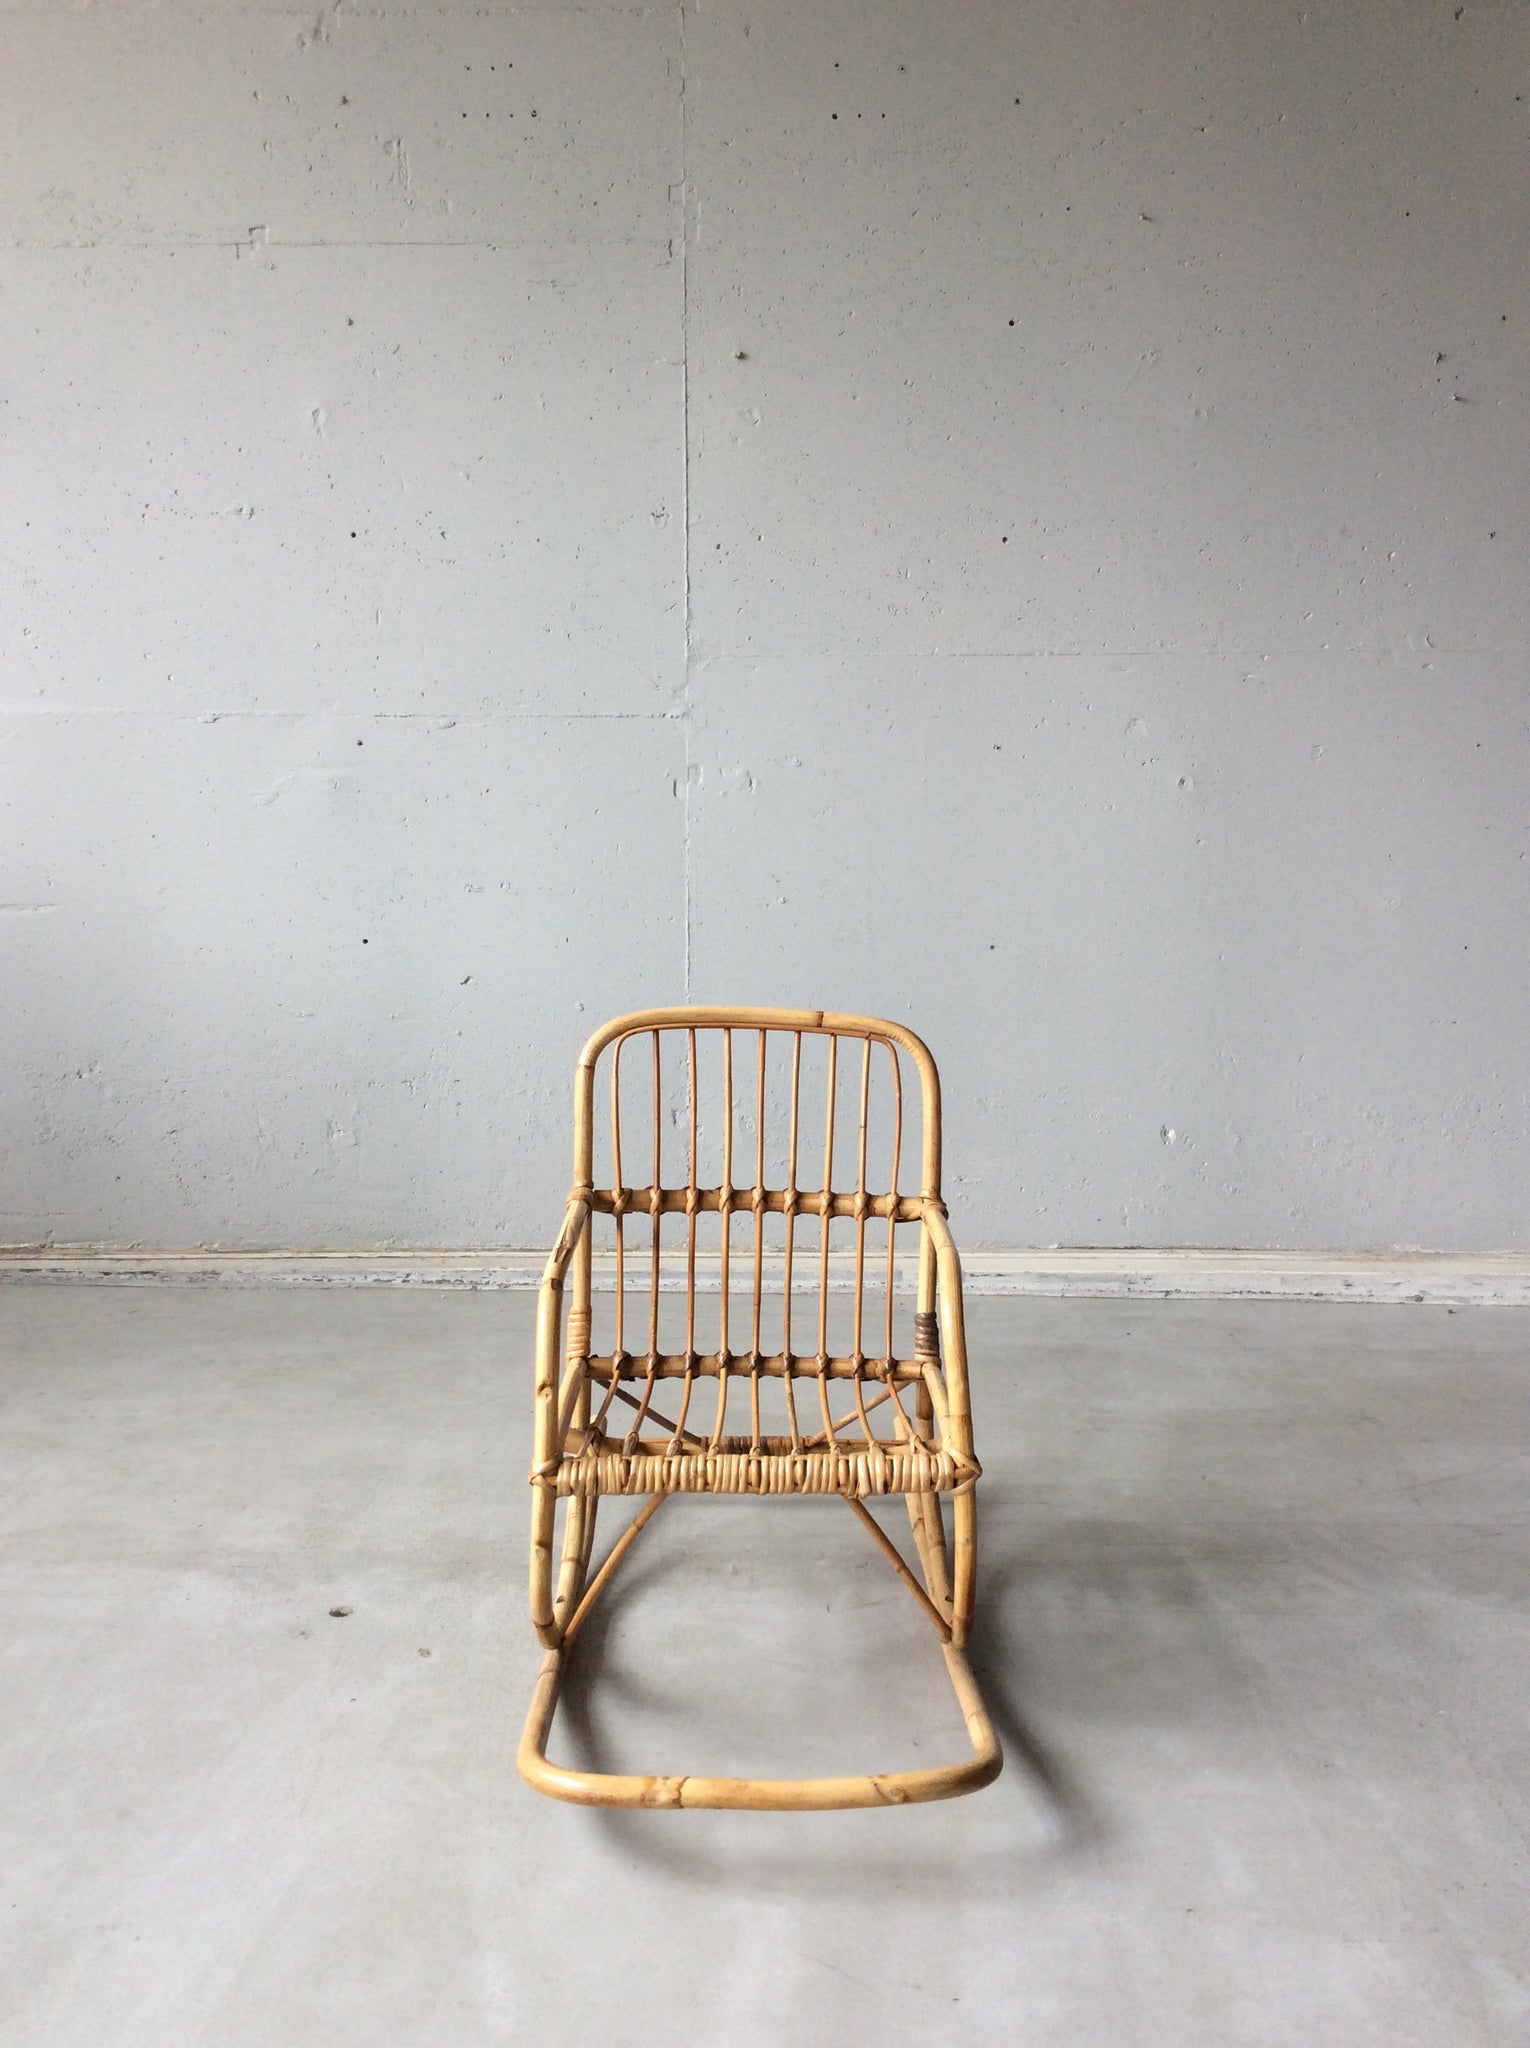 ラタンチェア / rattan chair #0063